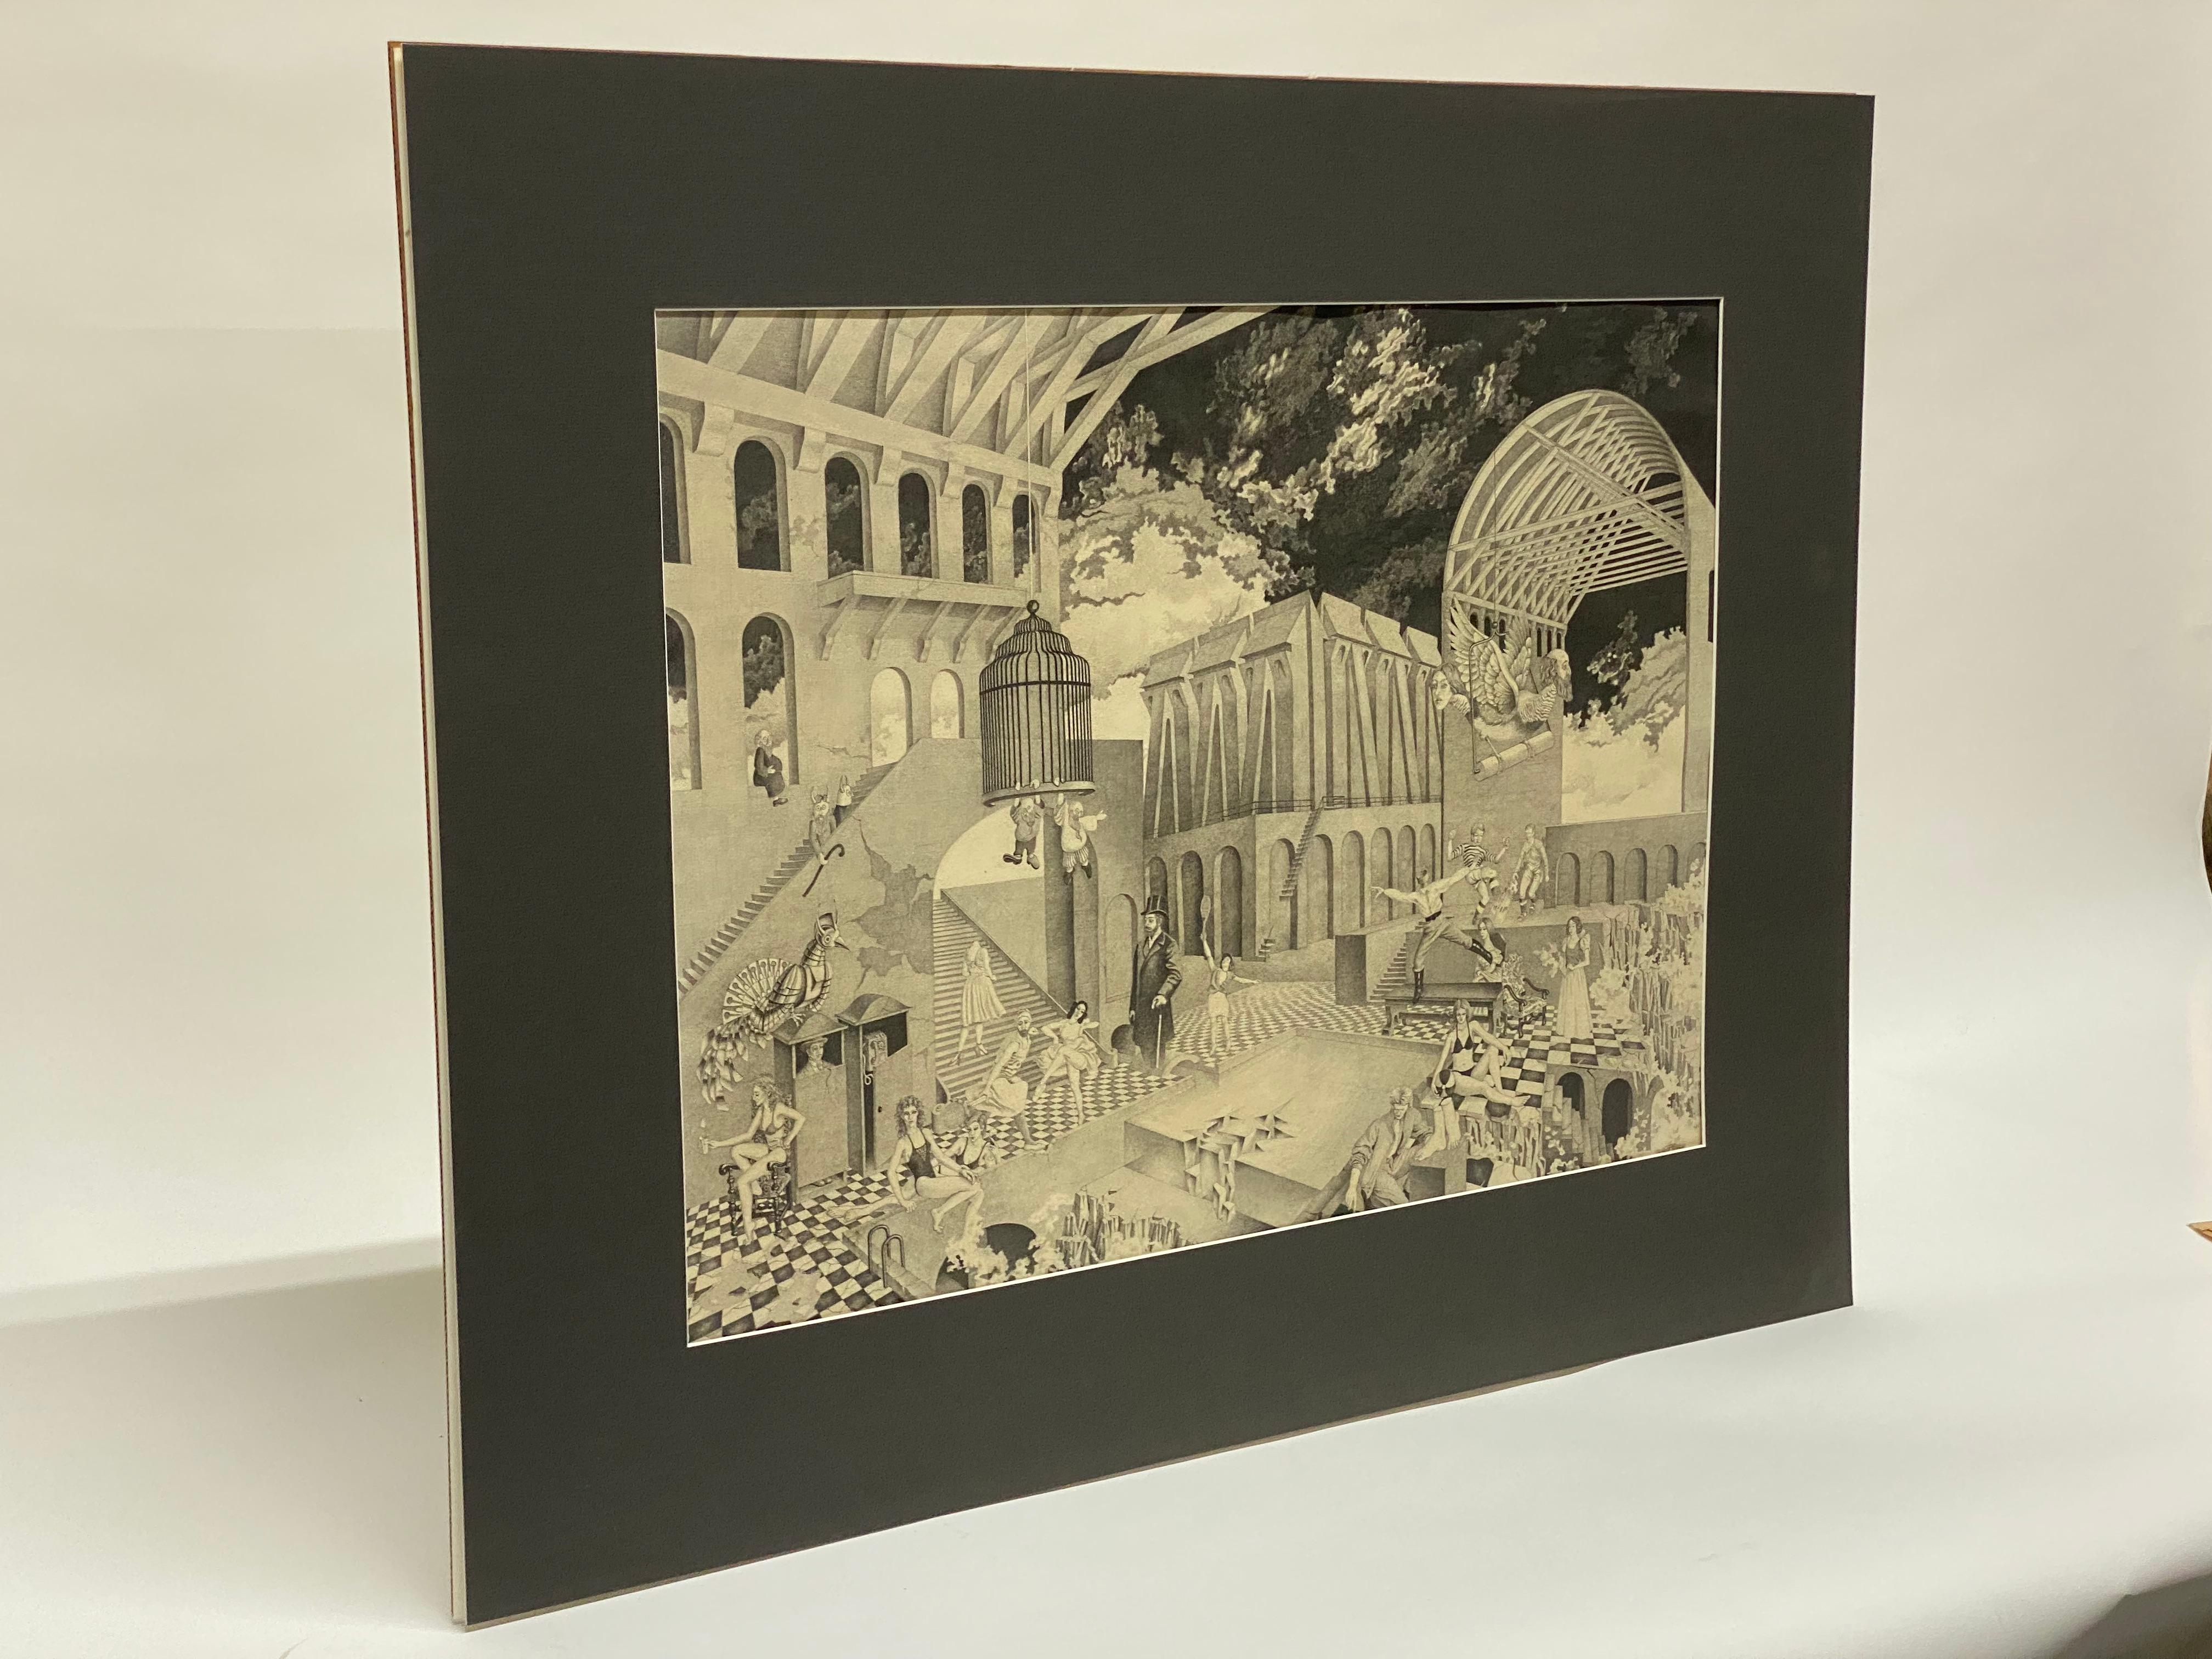 Peter or Petru Vintila's (1922-2002) Surrealist Homage to M.C. Escher entitled 